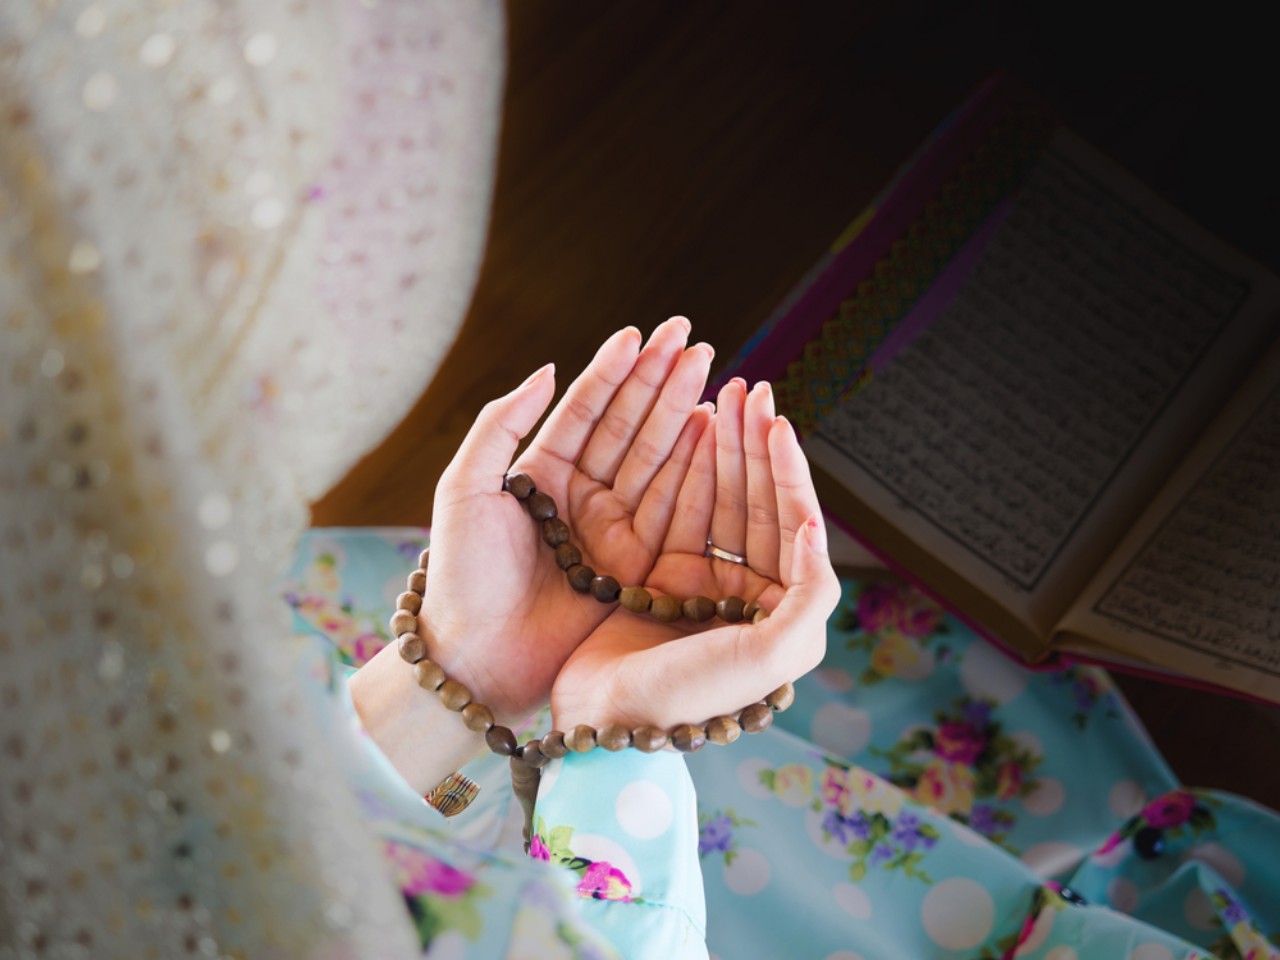 Unes palvetele vastamise kuulutamine vallalistele naistele